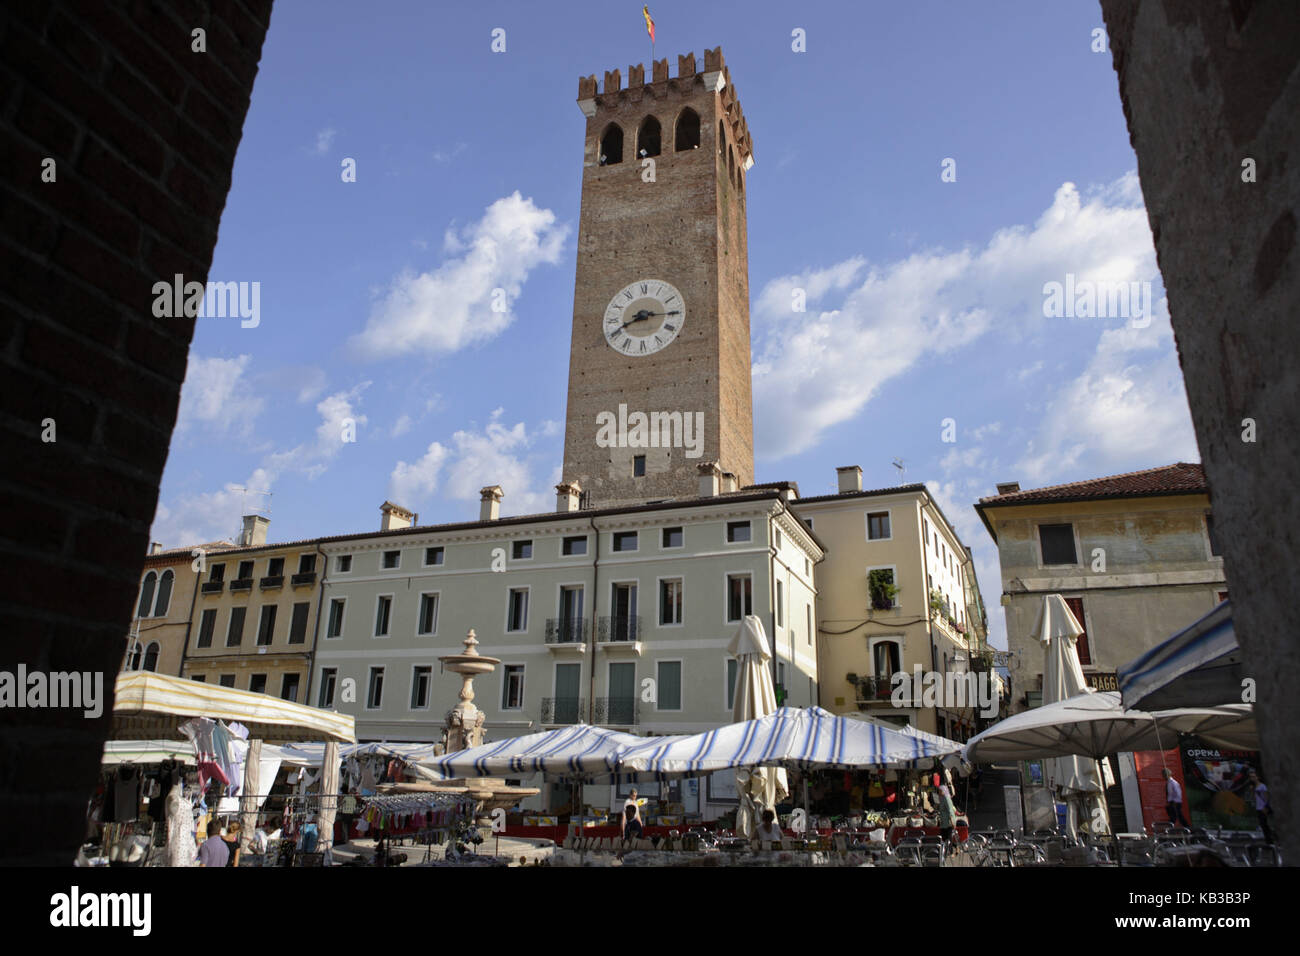 Market, Castello, Bassano del Grappa, Vicenza, Veneto, Italy, Stock Photo